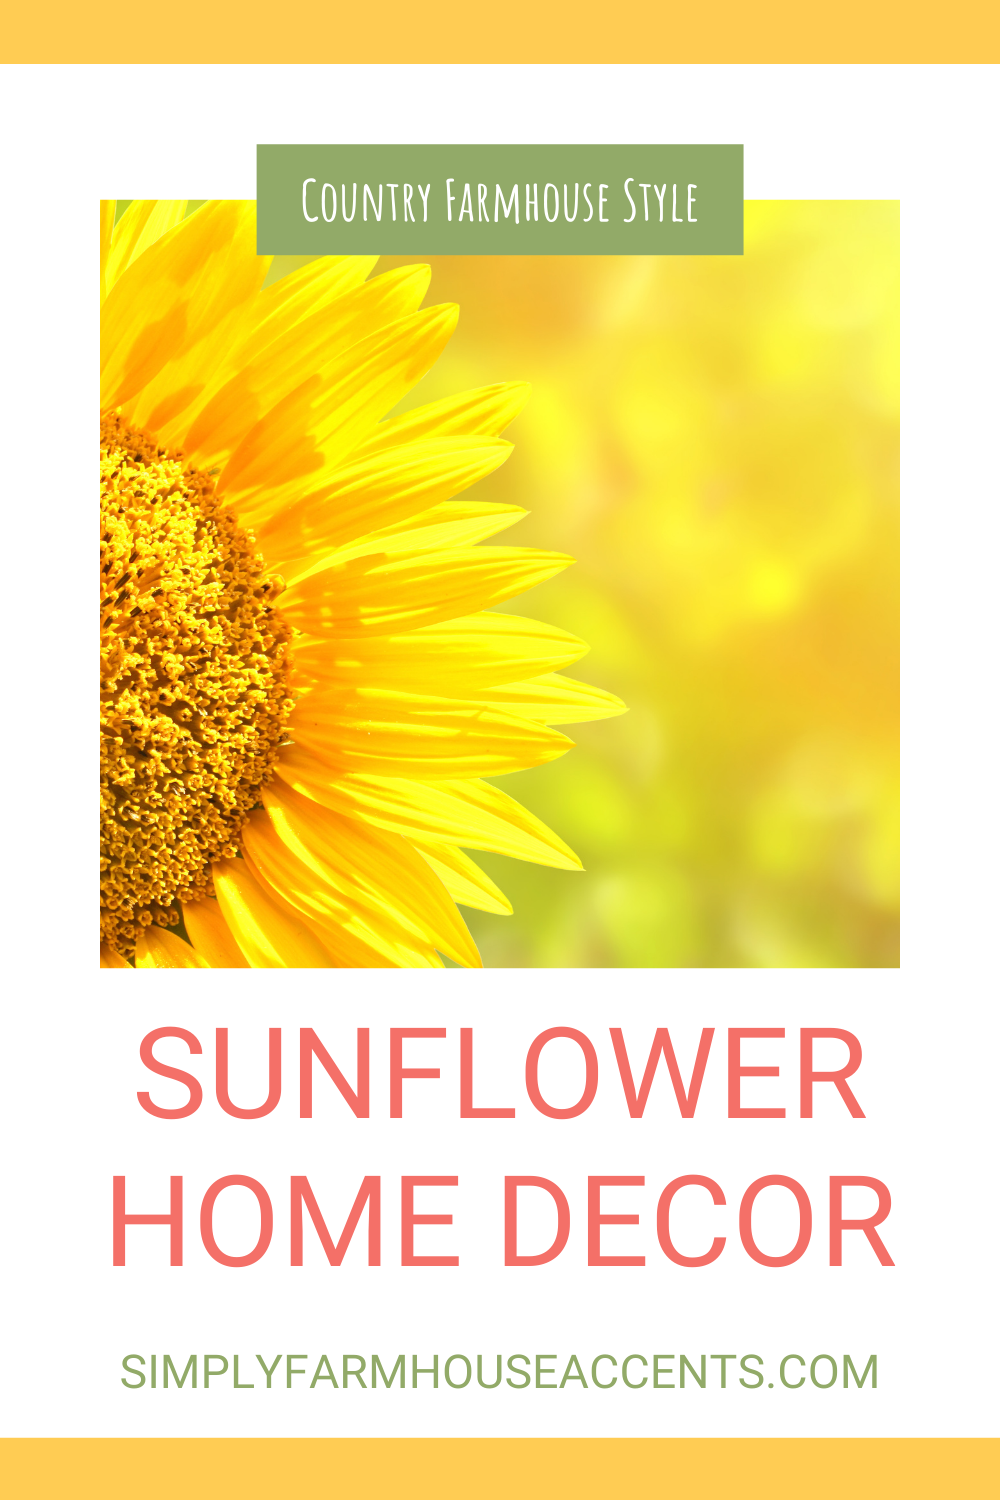 https://simplyfarmhouseaccents.com/wp-content/uploads/2021/08/Sunflower-Home-Decor-2.png